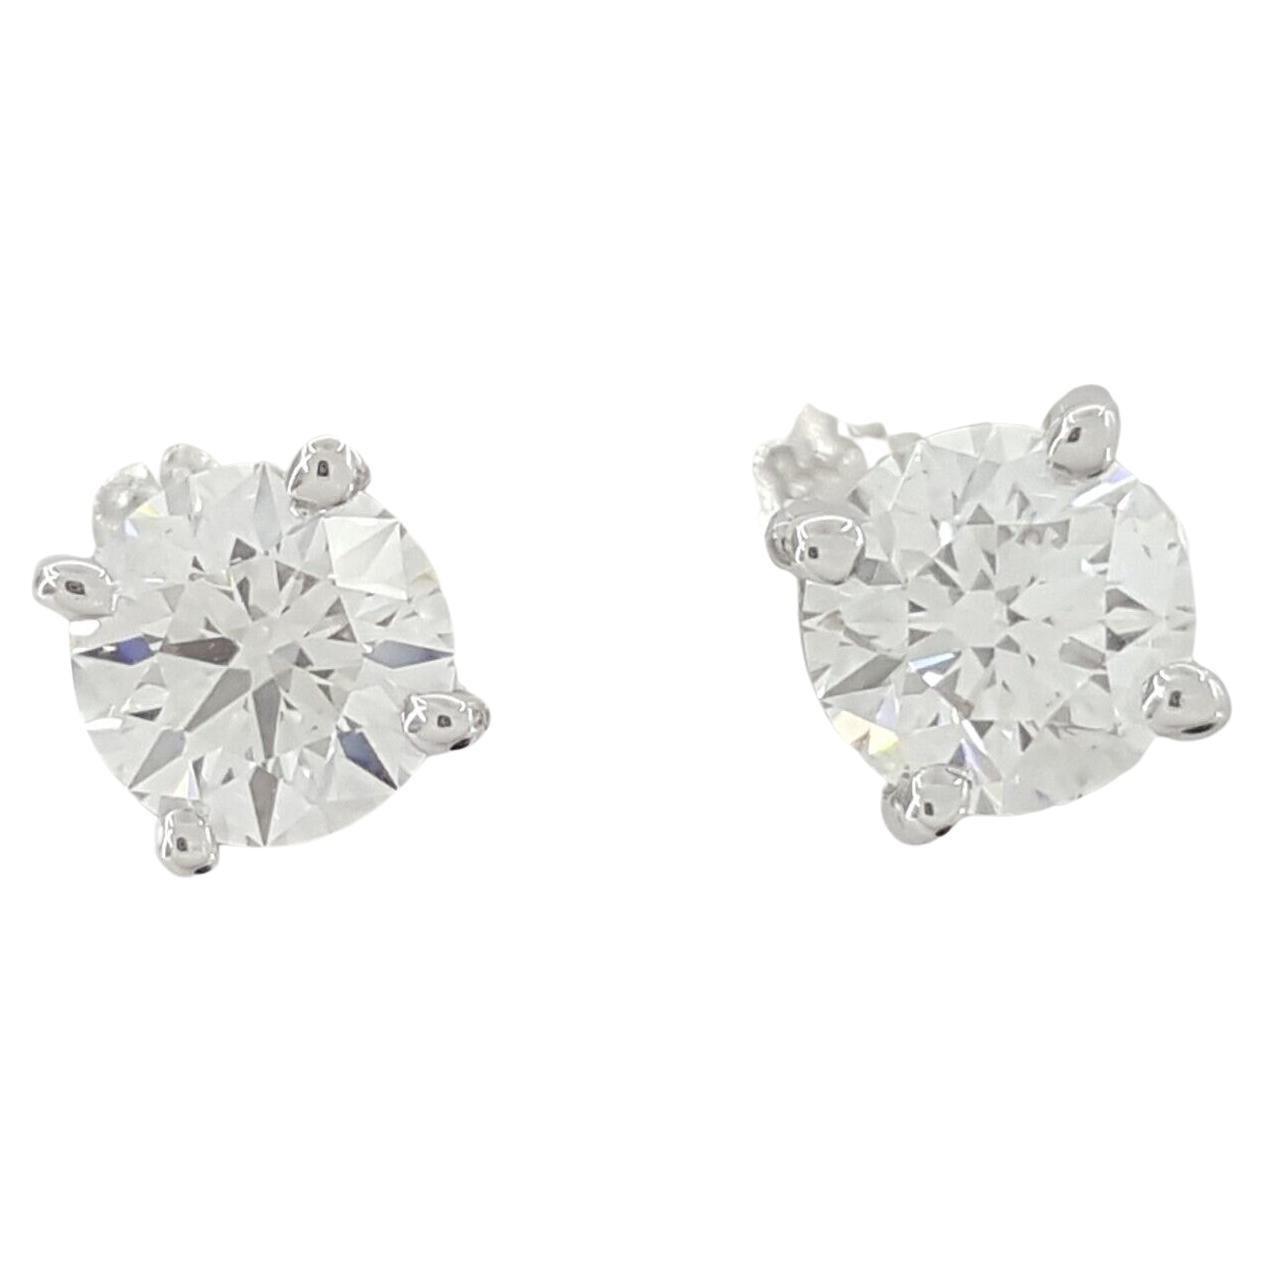 Ein exquisites Paar diamantener Ohrstecker von Tiffany & Co., die sich durch zeitlose Eleganz und außergewöhnliche Handwerkskunst auszeichnen.

Diese aus luxuriösem Platin gefertigten Ohrringe sind mit zwei natürlichen, runden Diamanten im